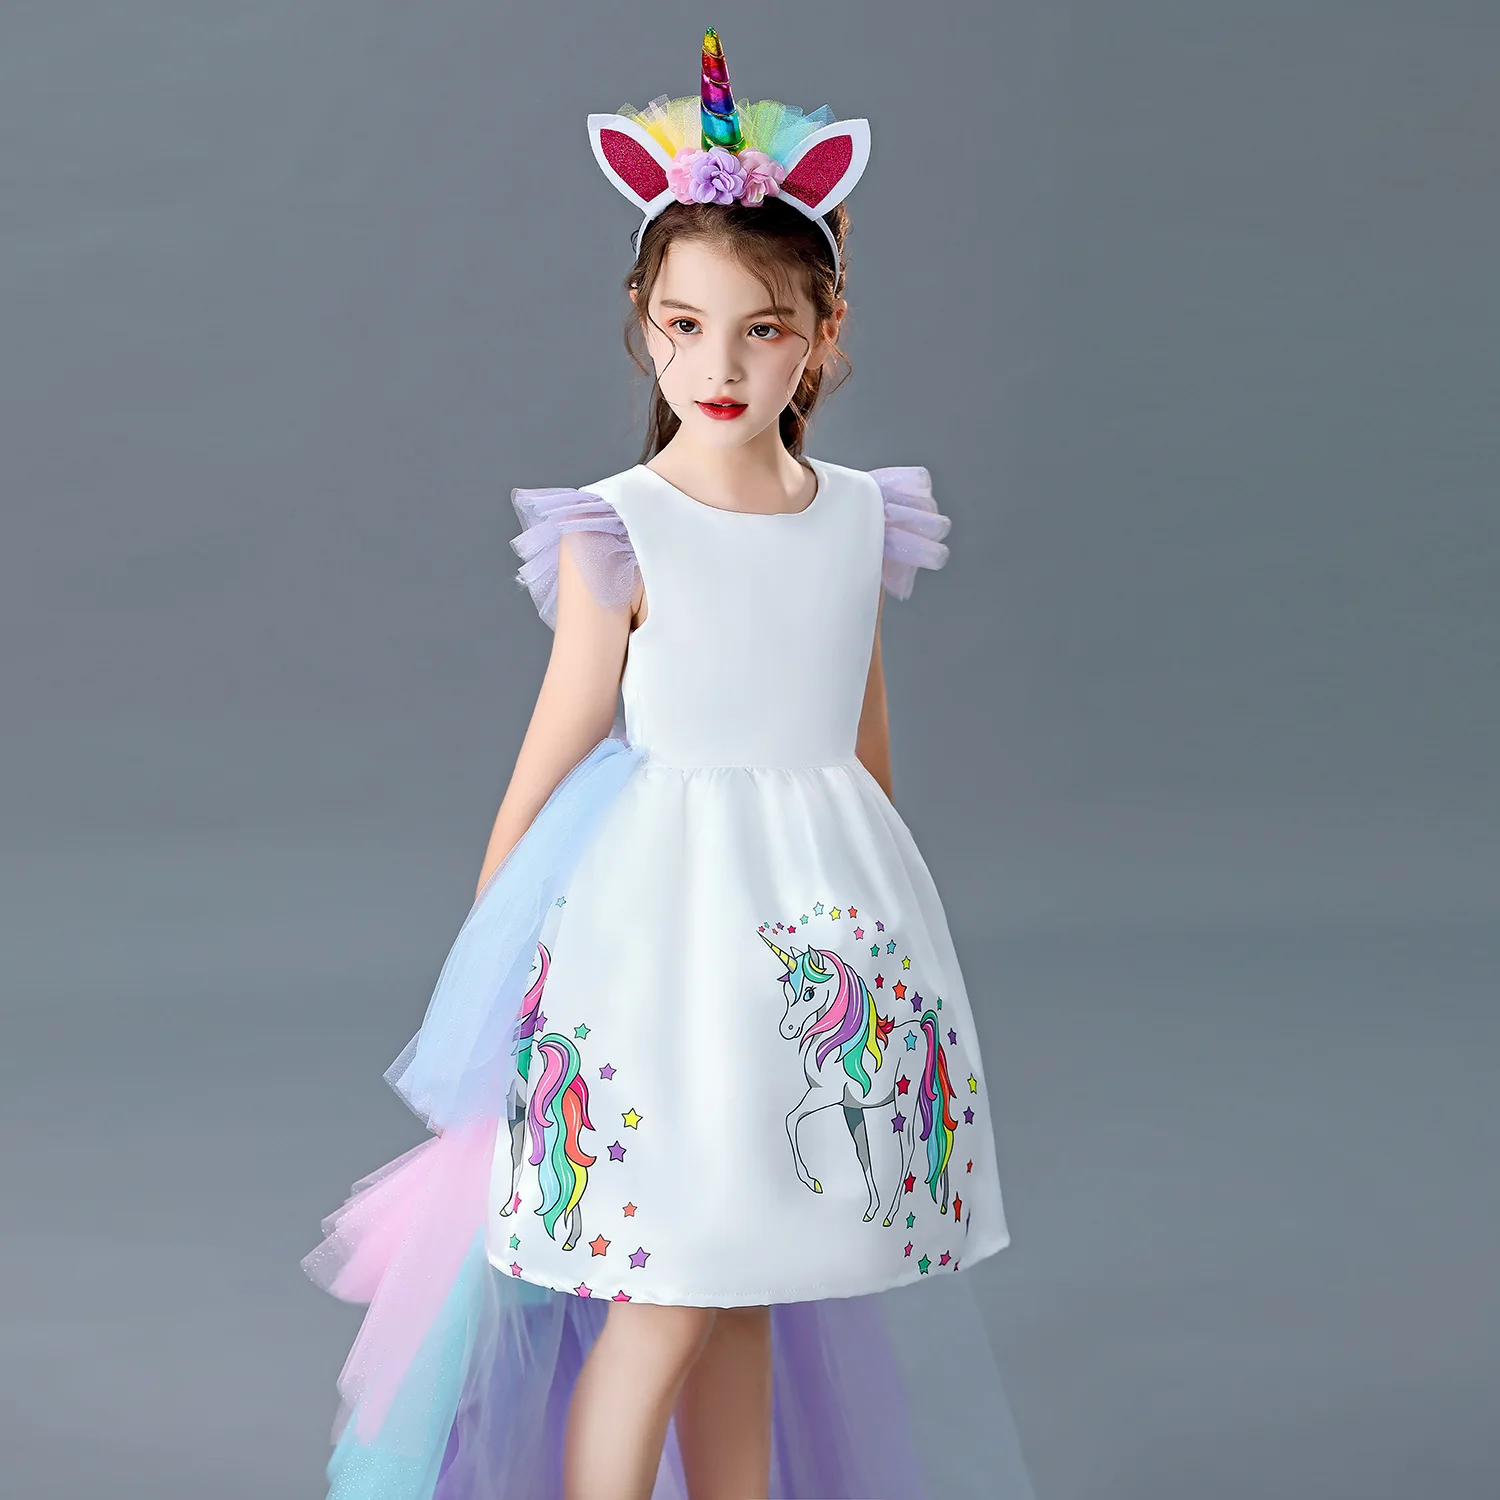 Платье Единорог для 8 лет. Купить платье для девочки с единорогом нарядное. Платье с единорогом